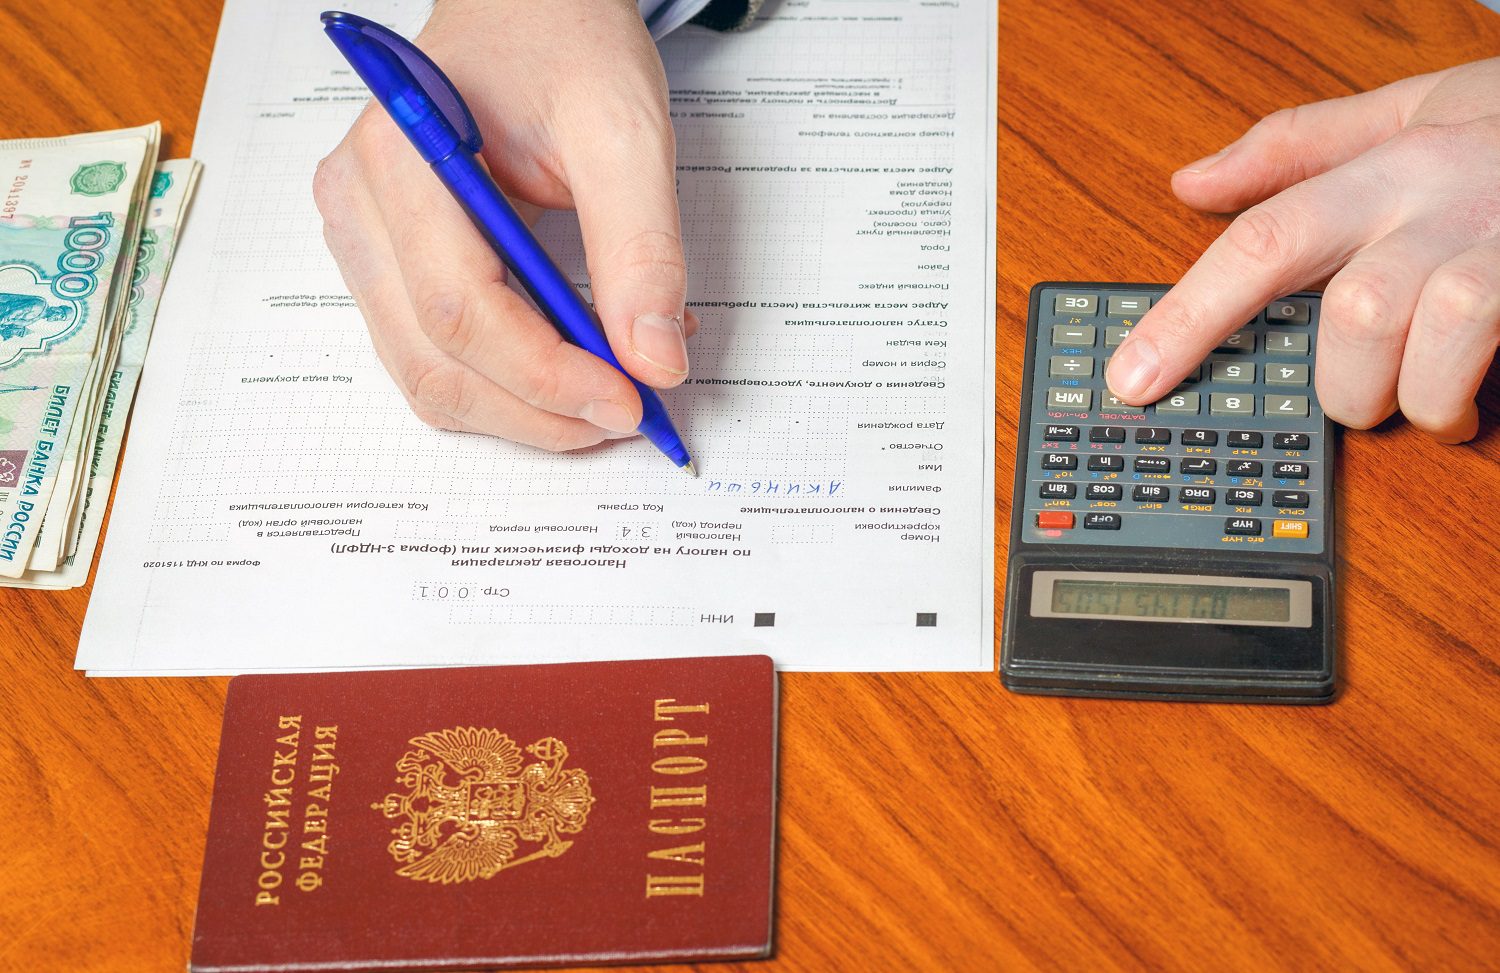 Una persona llena una declaración de impuestos rusa, sosteniendo un bolígrafo.  Al lado del formulario hay una pequeña pila de billetes rusos y una calculadora.  La persona presiona un botón de la calculadora.